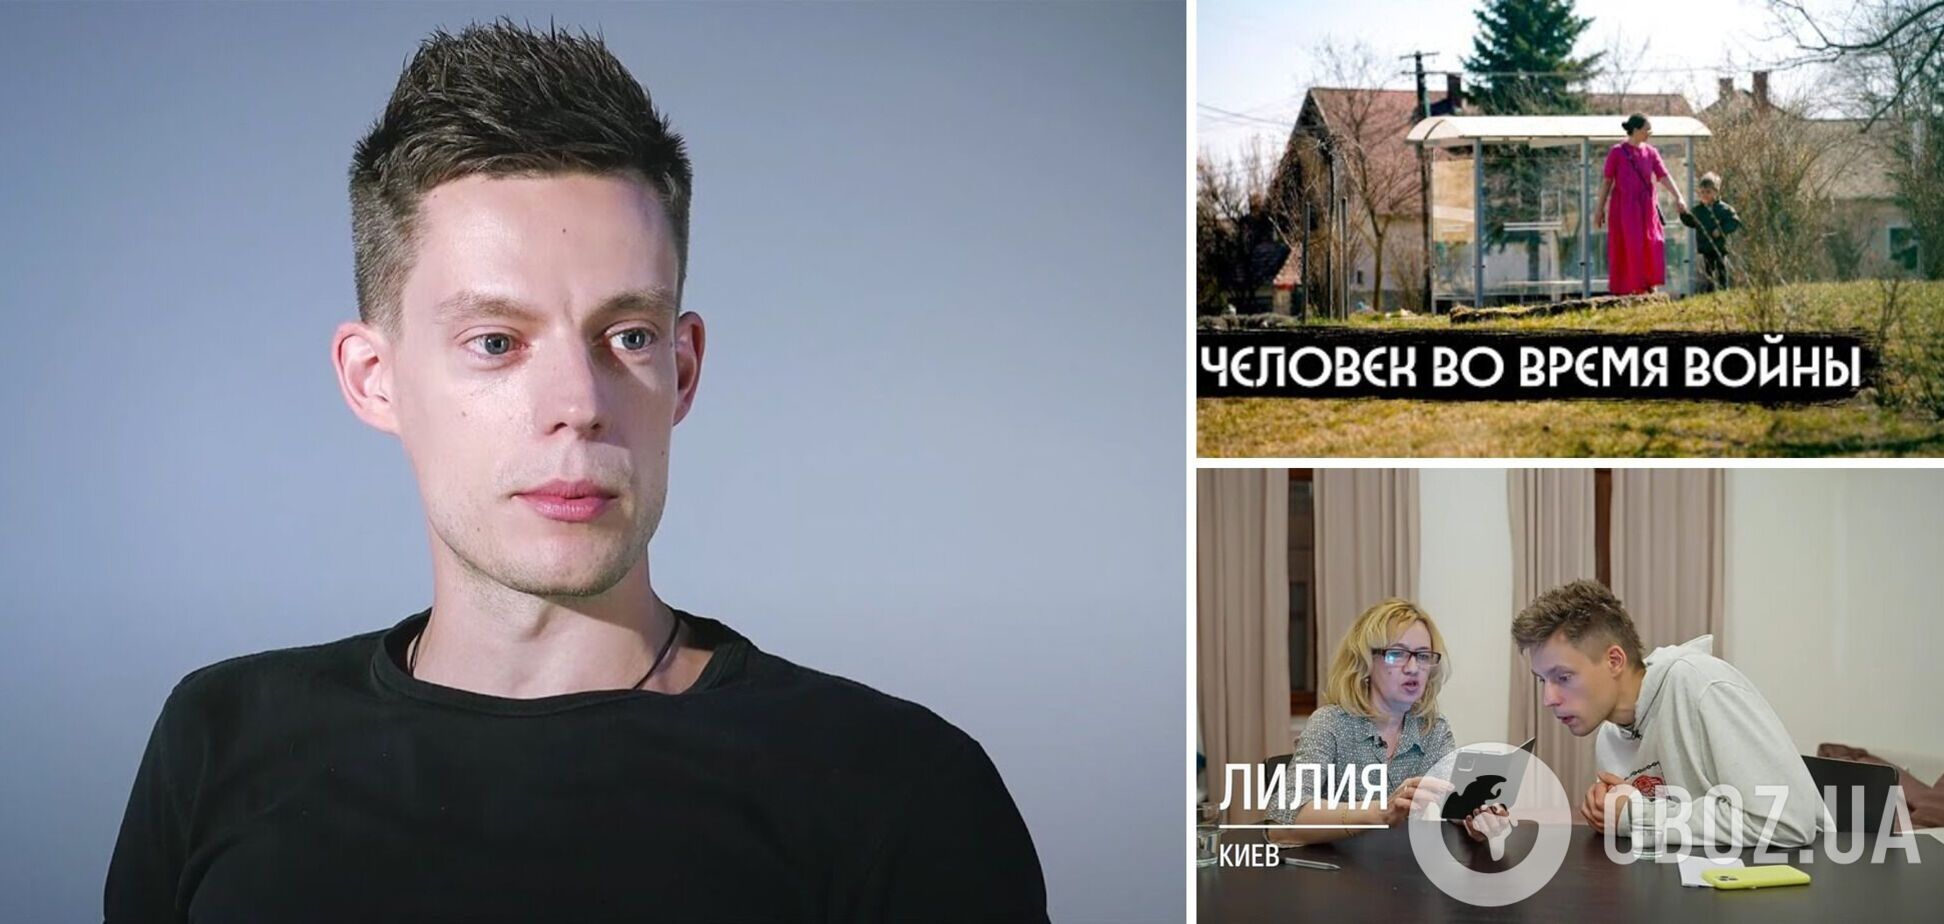 Режисерка назвала випуск Дудя про Україну новою пропагандою: не дивіться це л*йно